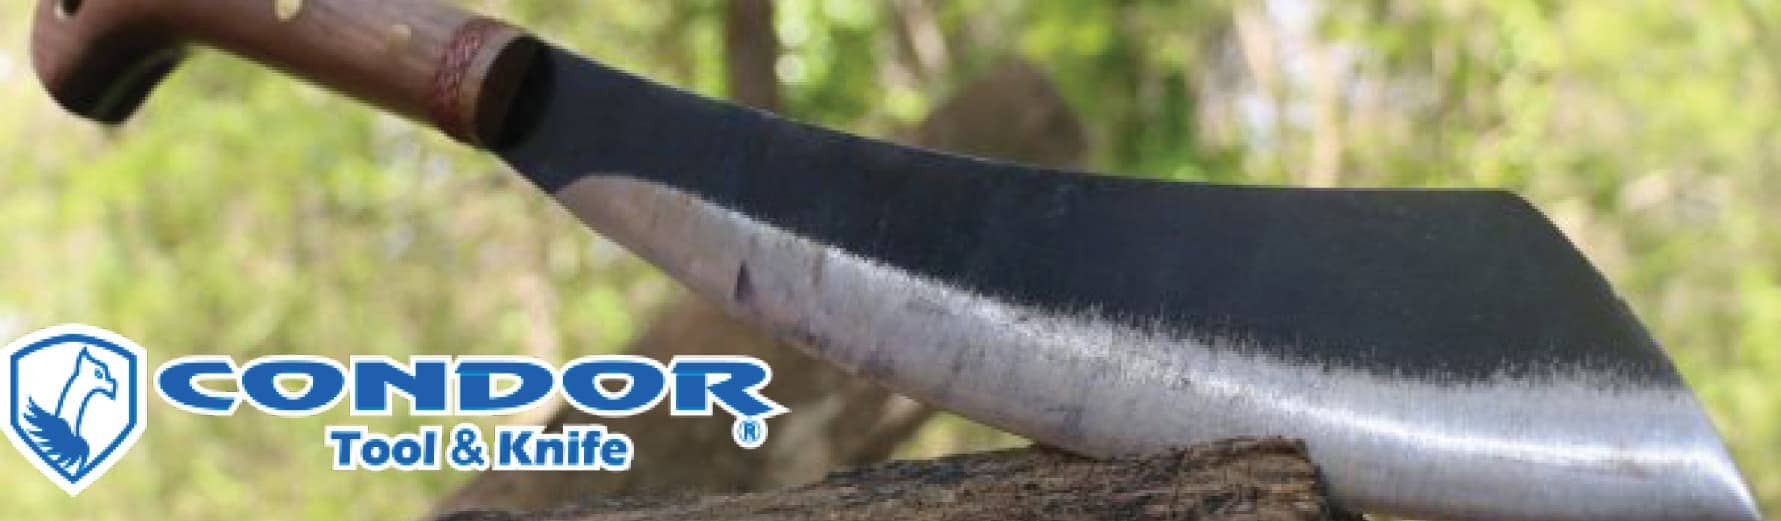 Condor Tools & Knives